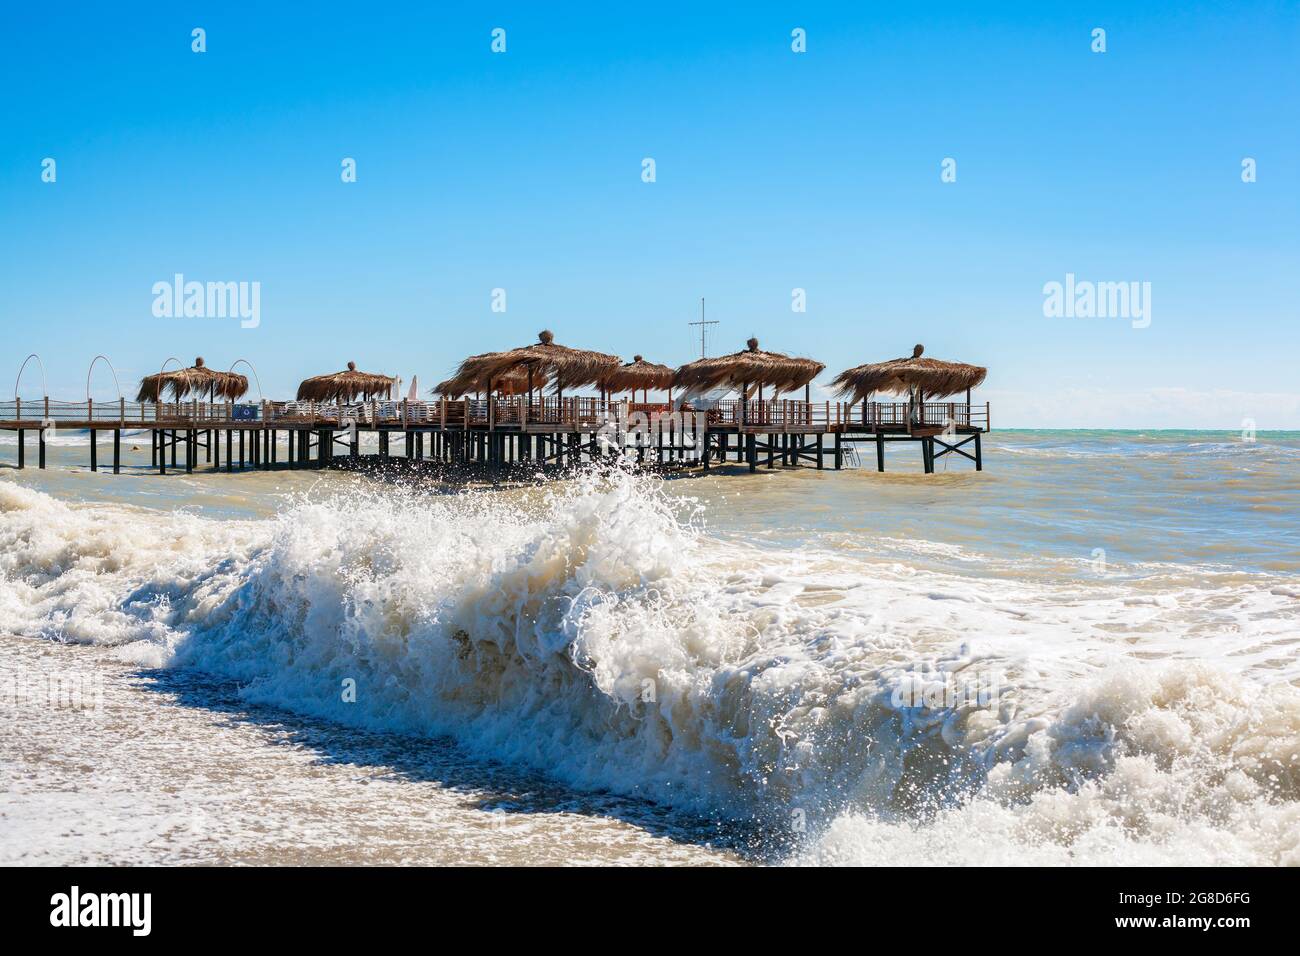 Des cabanes de palmiers sur un quai en bois dans une mer ondulée. Concept de fin d'été. Banque D'Images